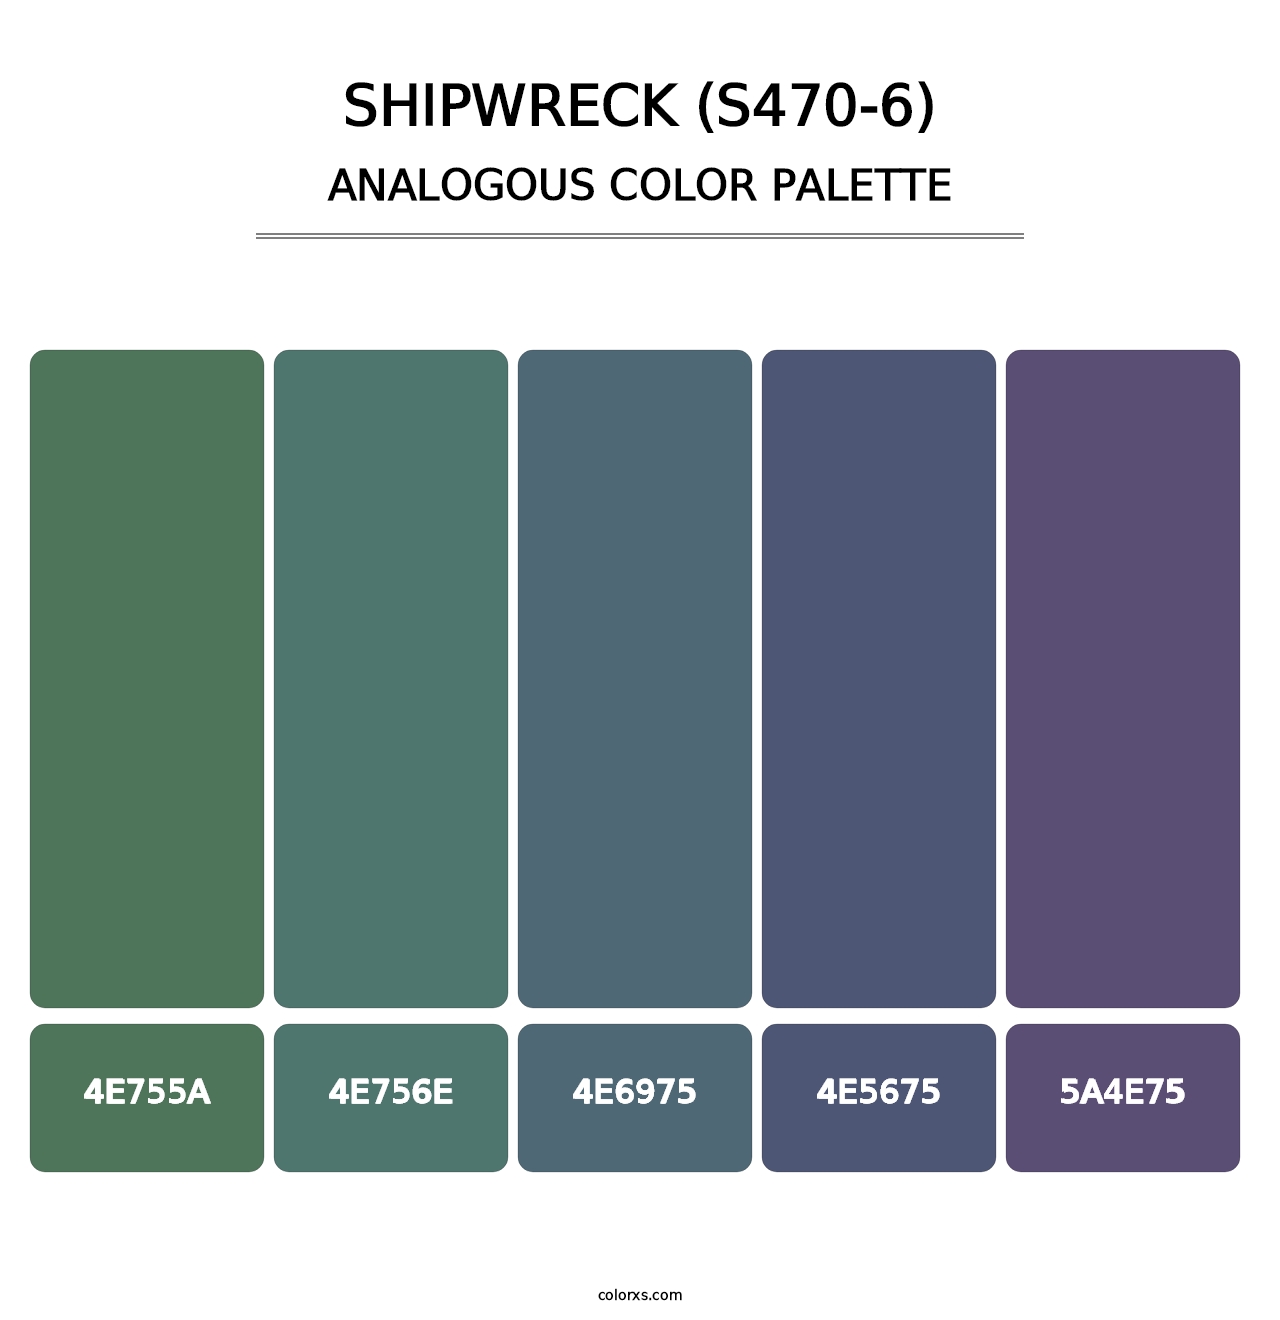 Shipwreck (S470-6) - Analogous Color Palette